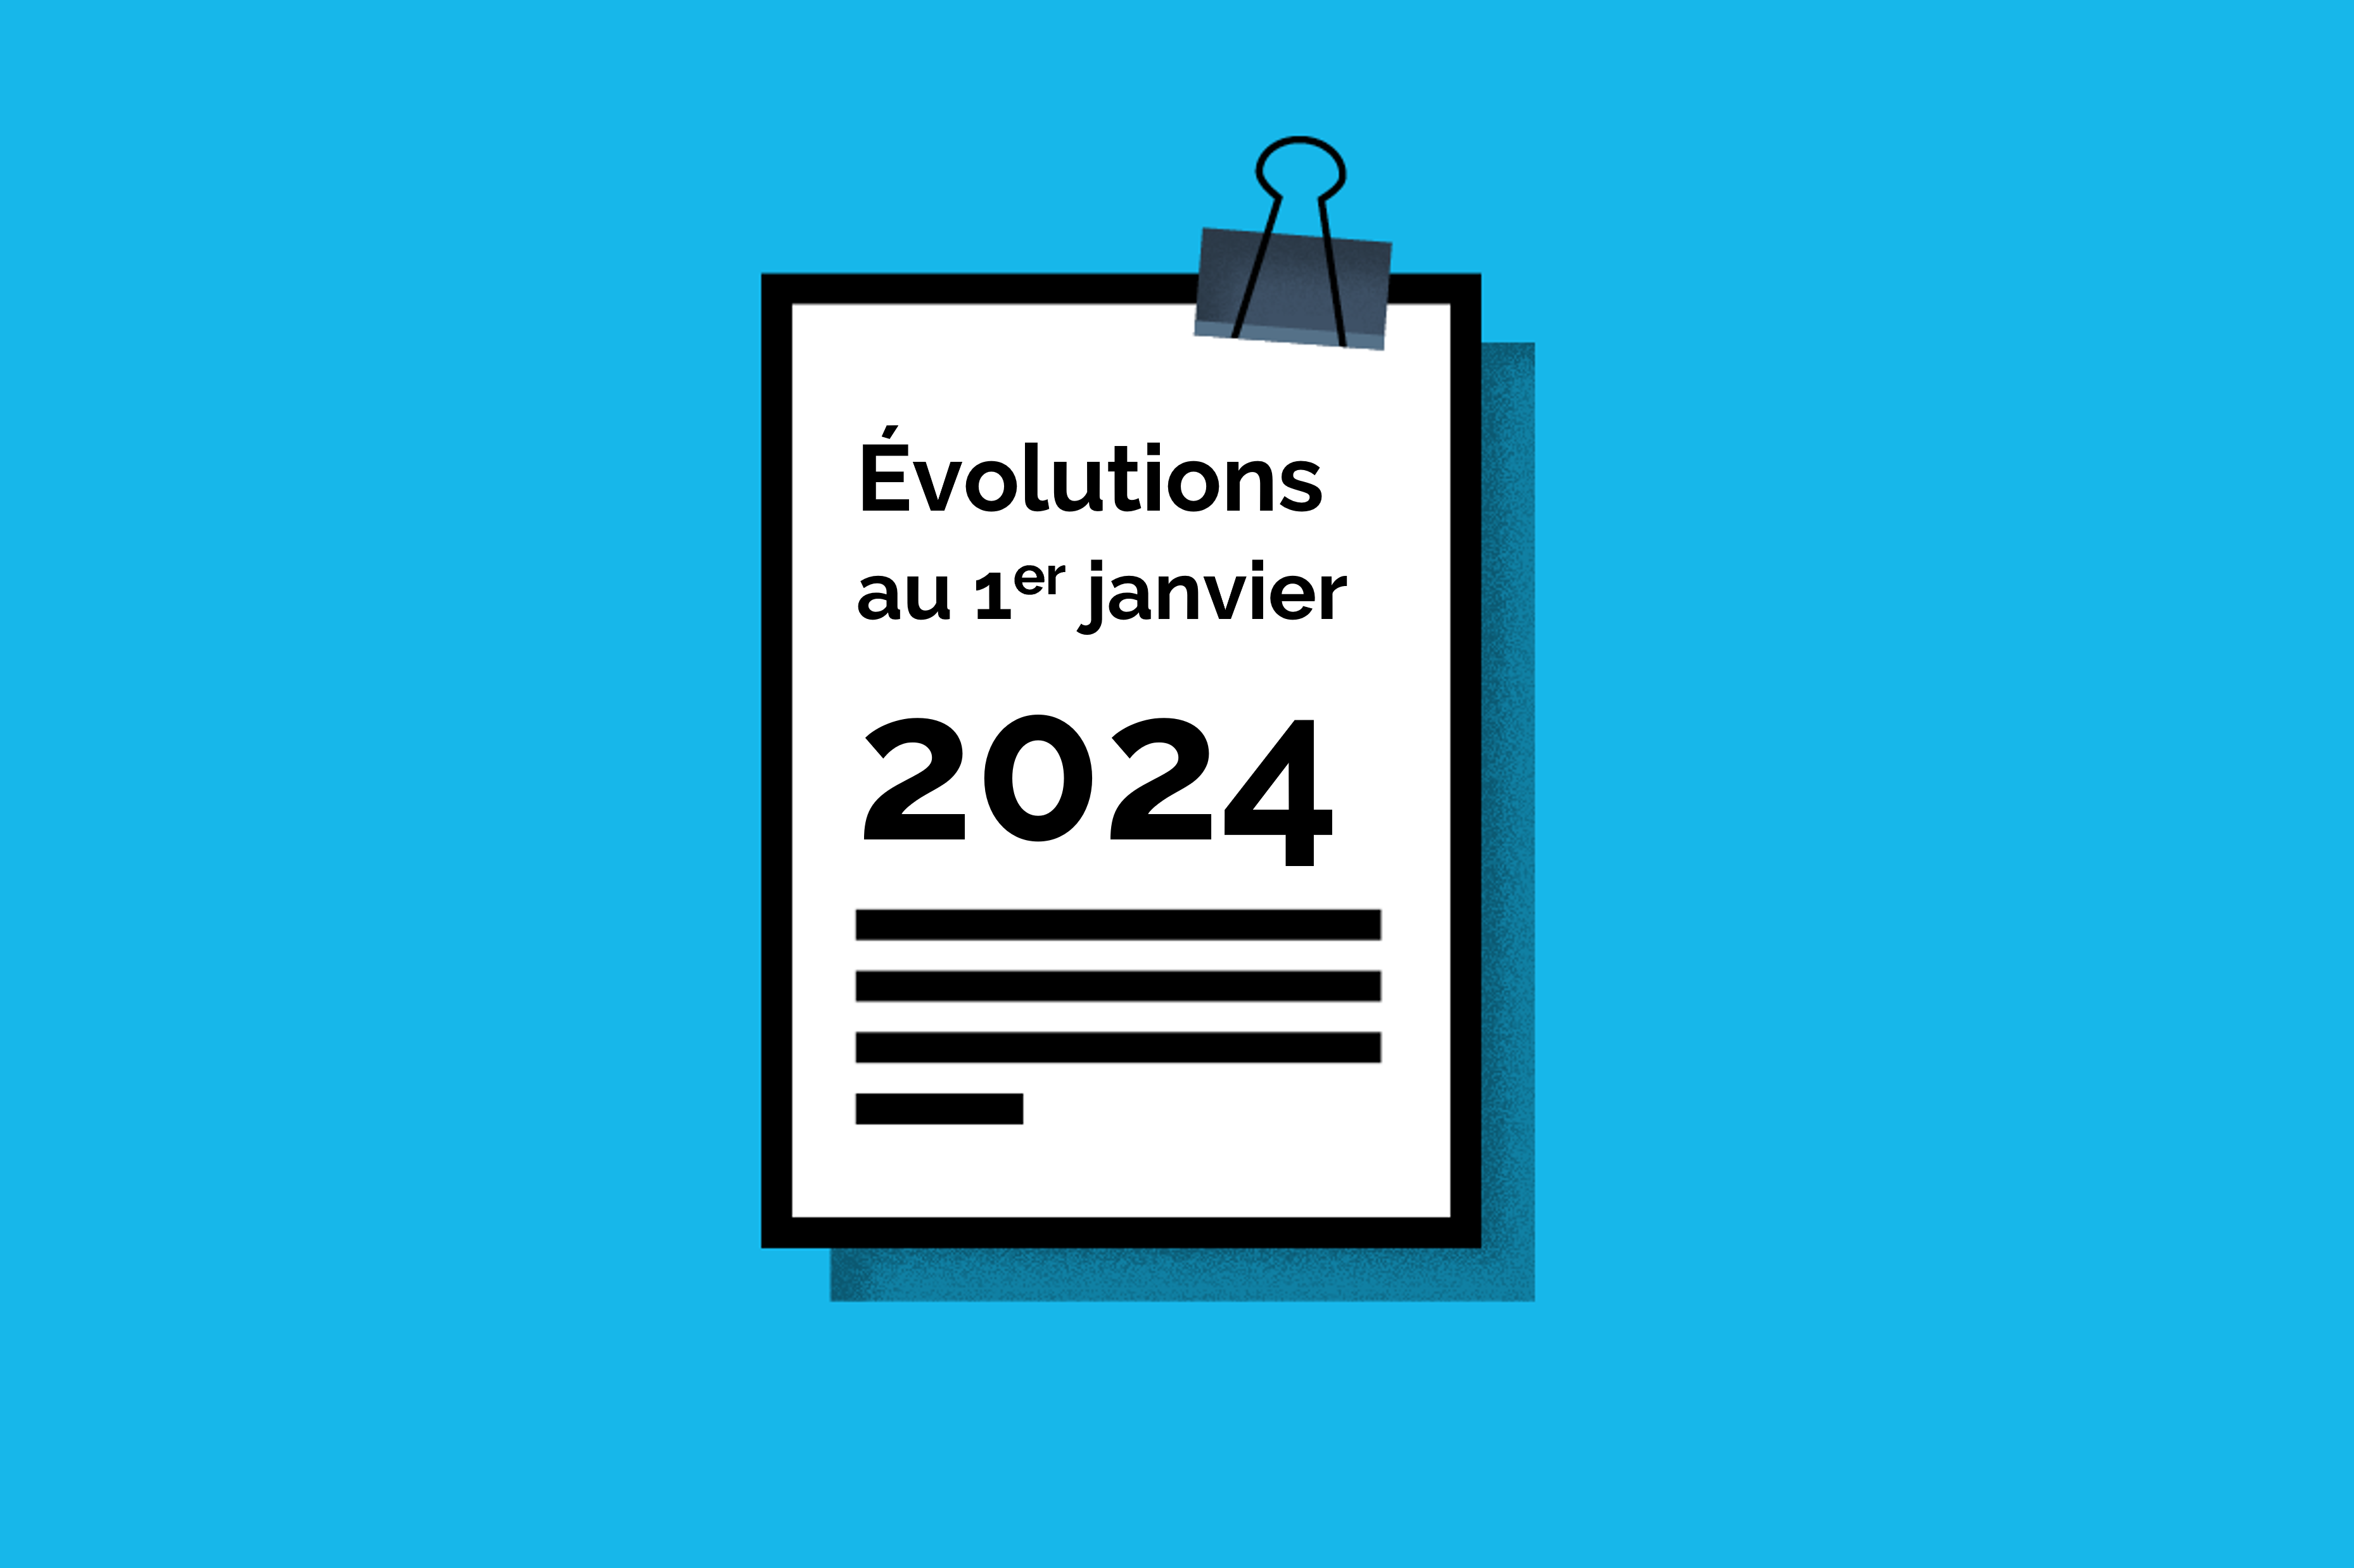 Dossier sur lequel est inscrit Evolutions au 1er janvier 2024